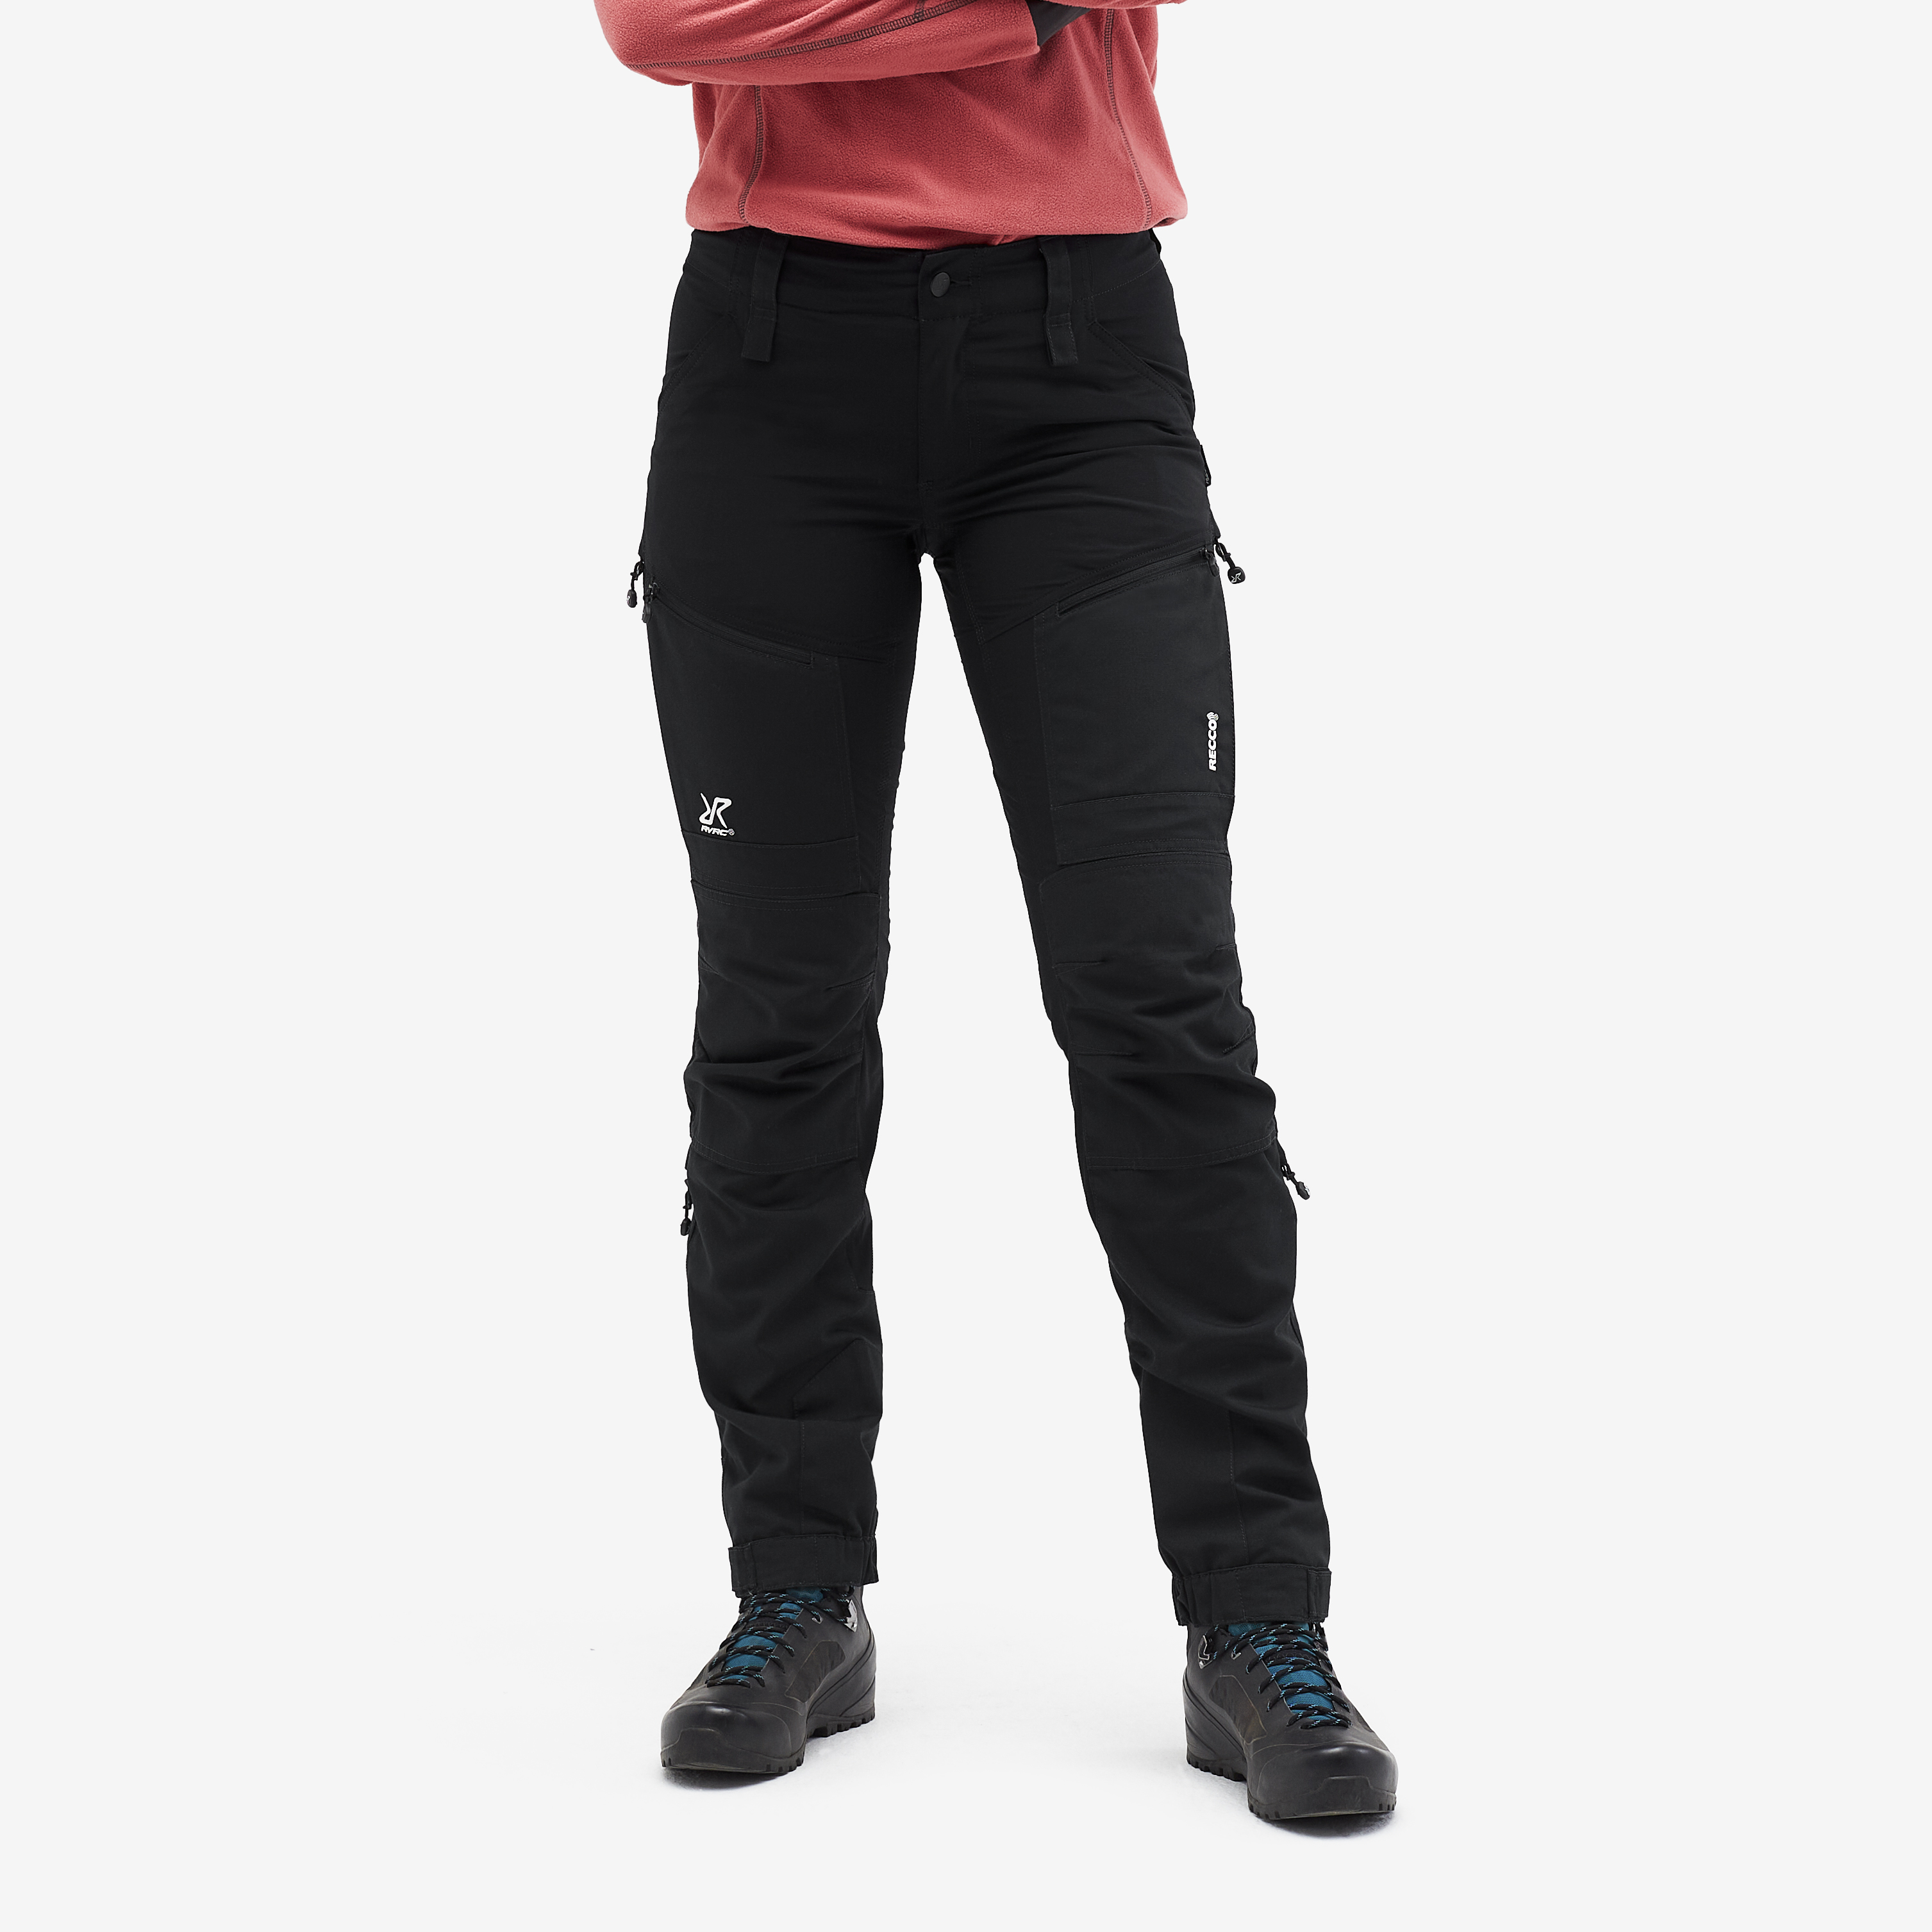 Nordwand outdoorové kalhoty pro ženy v černé barvě